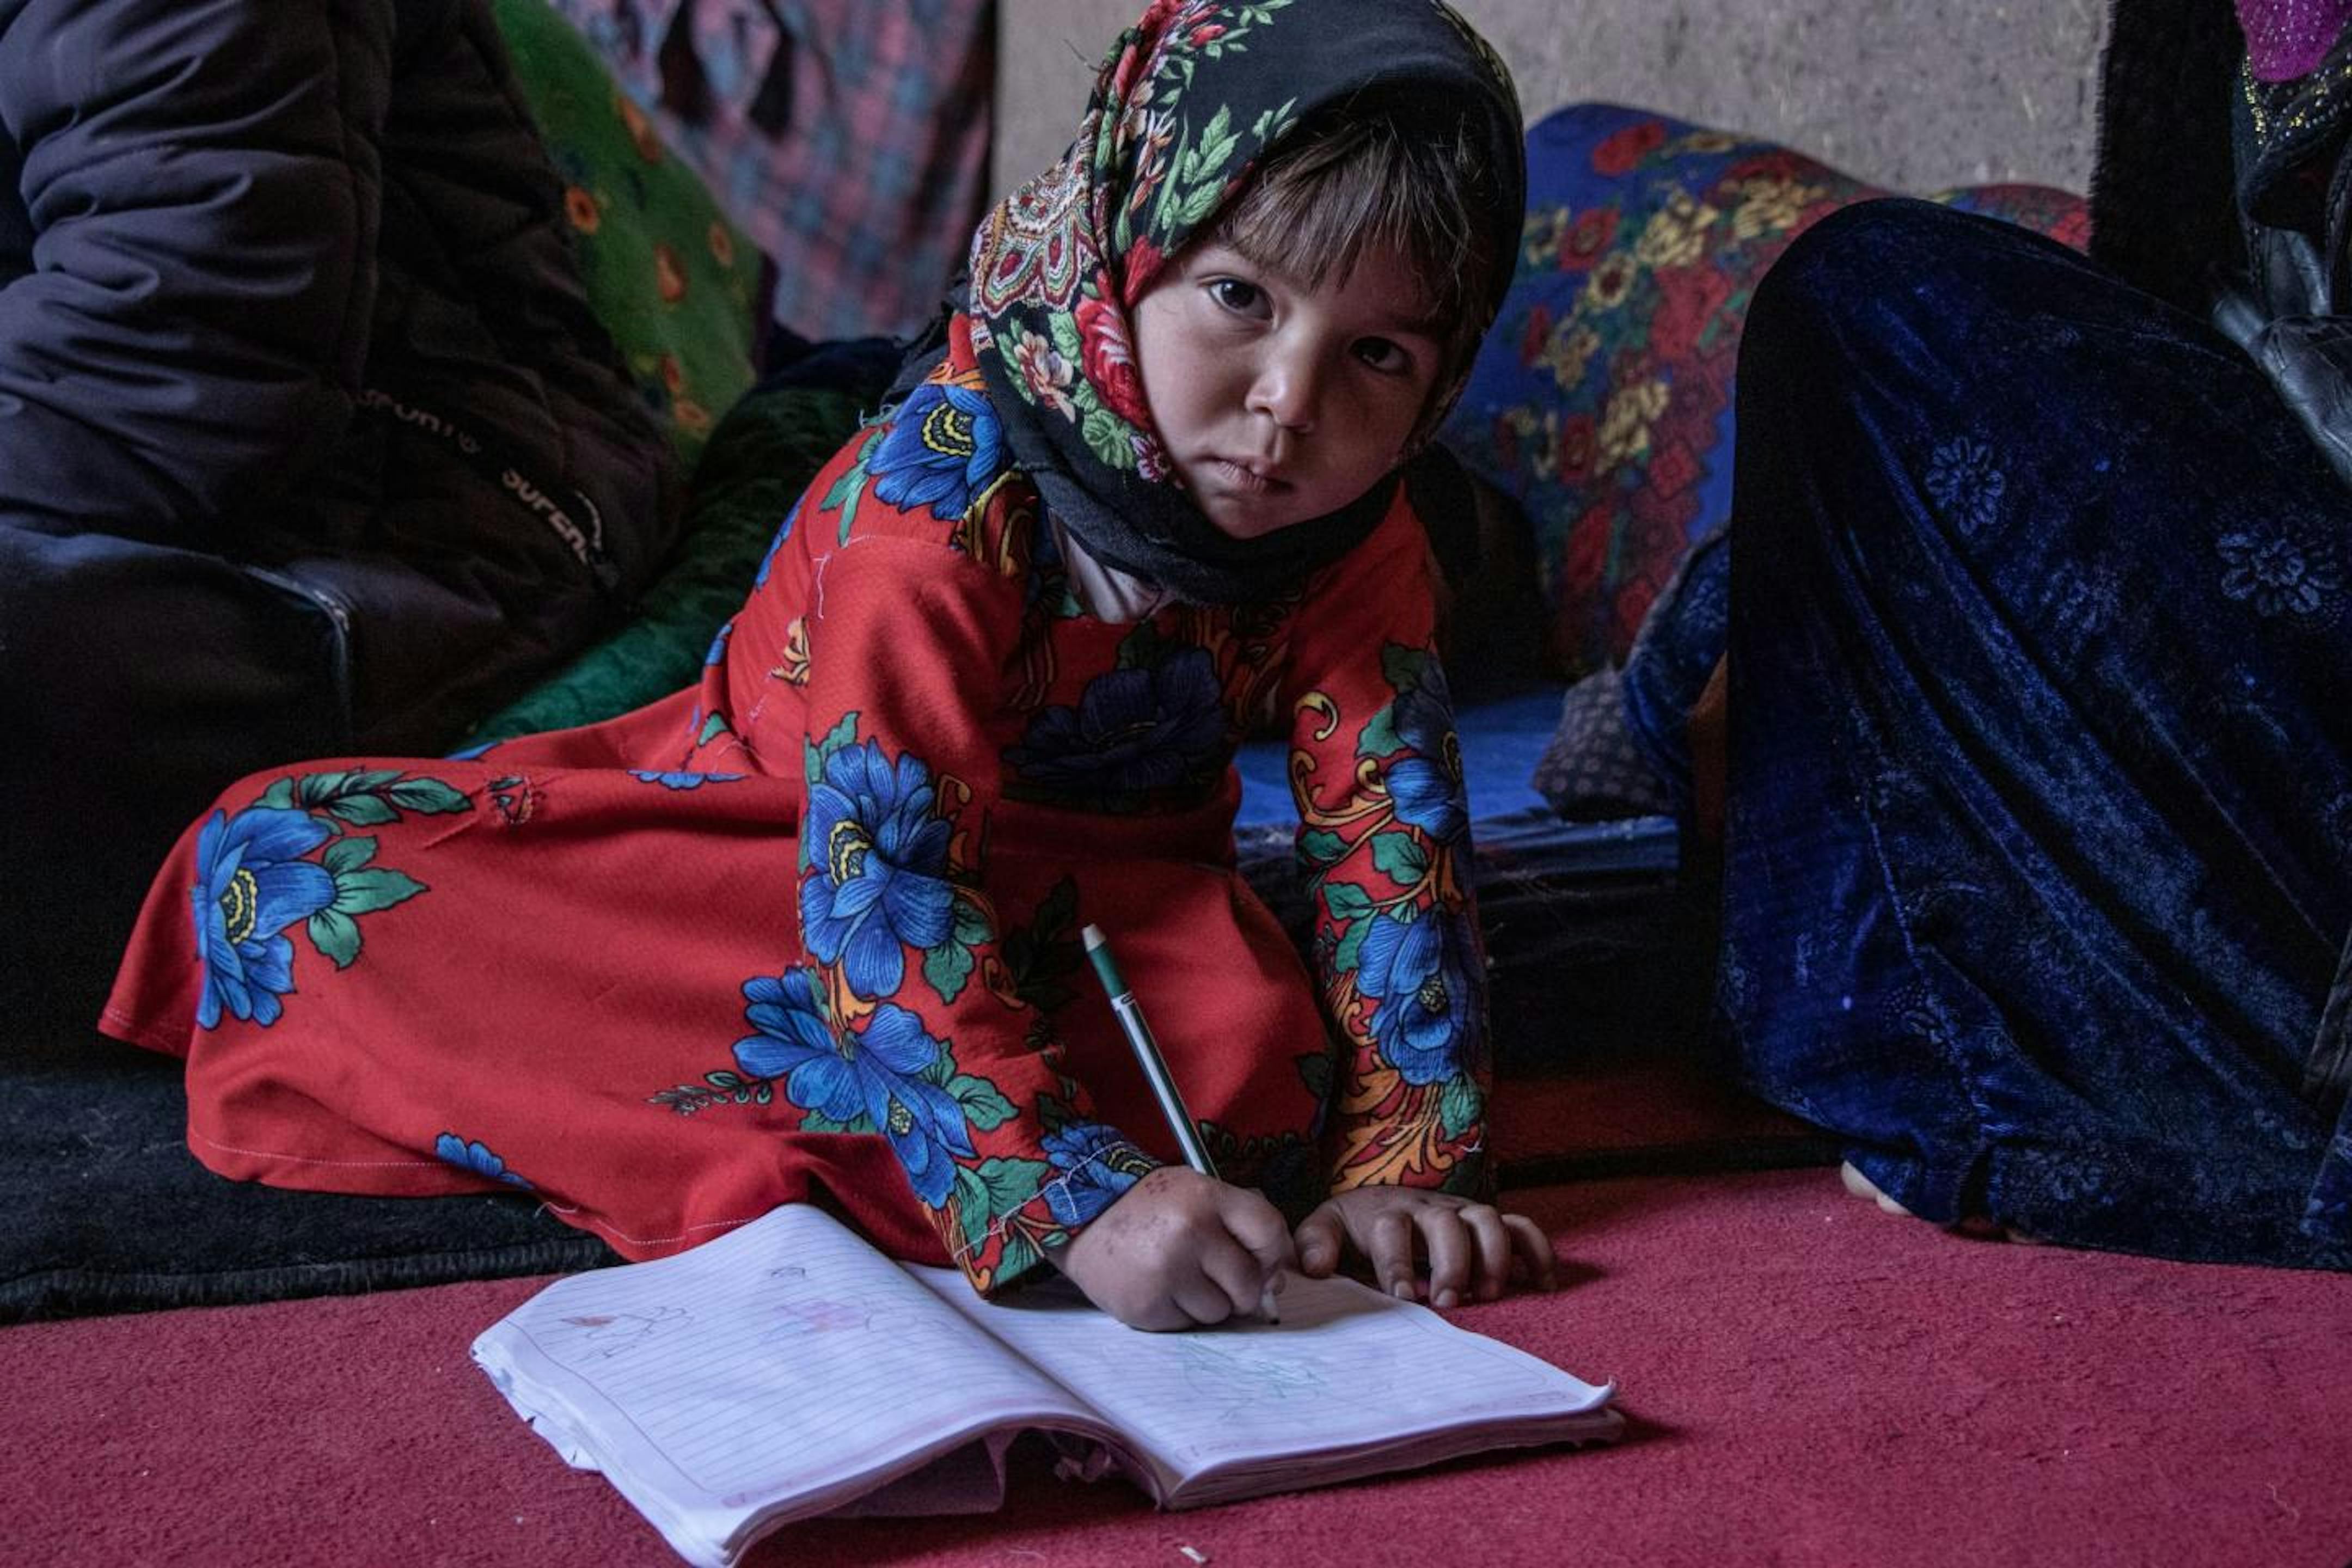 Afghanistan. La piccola Farhana era destinata a diventare una sposa bambina per estinguere il debito dei suoi genitori. L'intervento dell'UNICEF e del Comitato di Protezione di Comunità ha evitato, per il momento, questa violenza